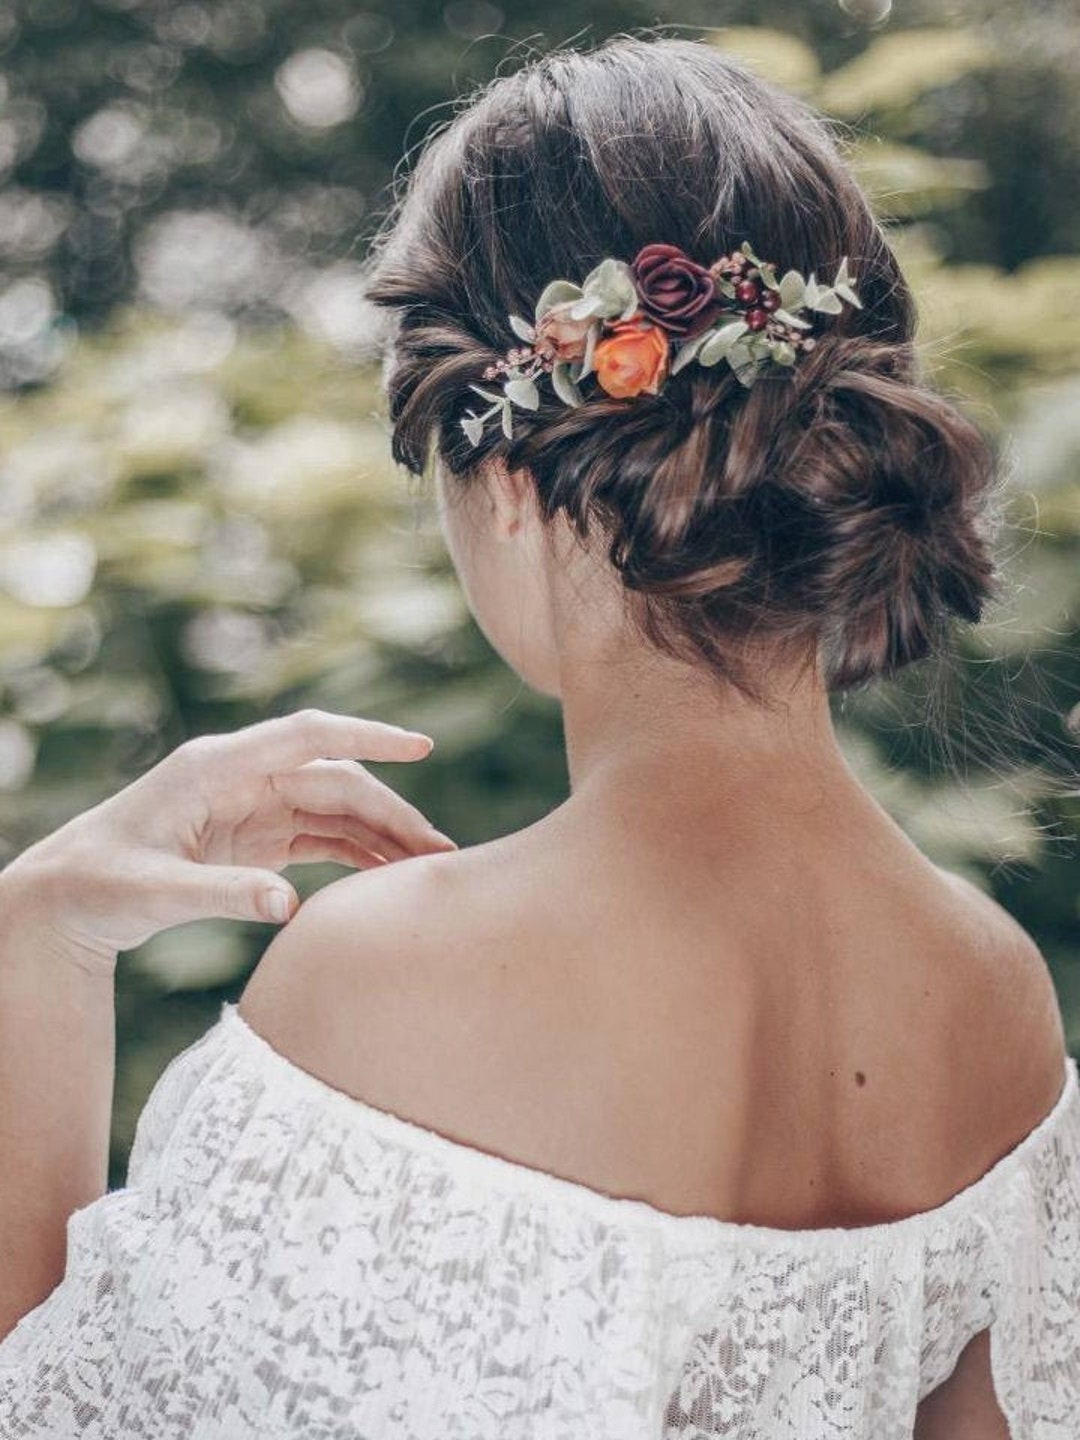 Pearl Hair Pins, 5PCS Bridal Hair Clips Decorative Wedding Hair